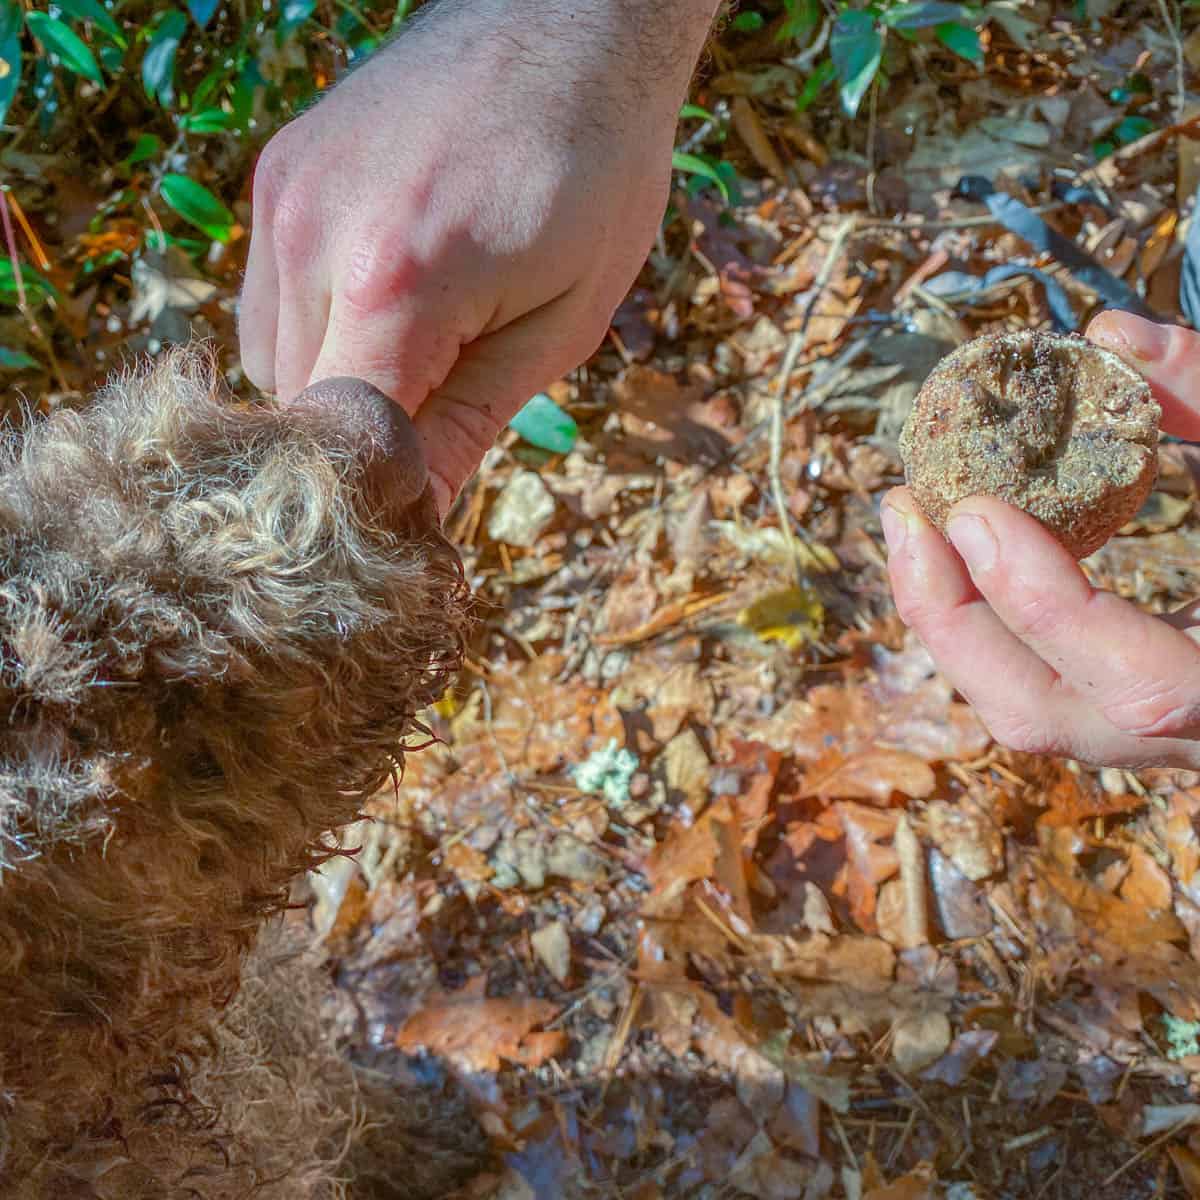 Feeding a truffle dog a treat for a truffle